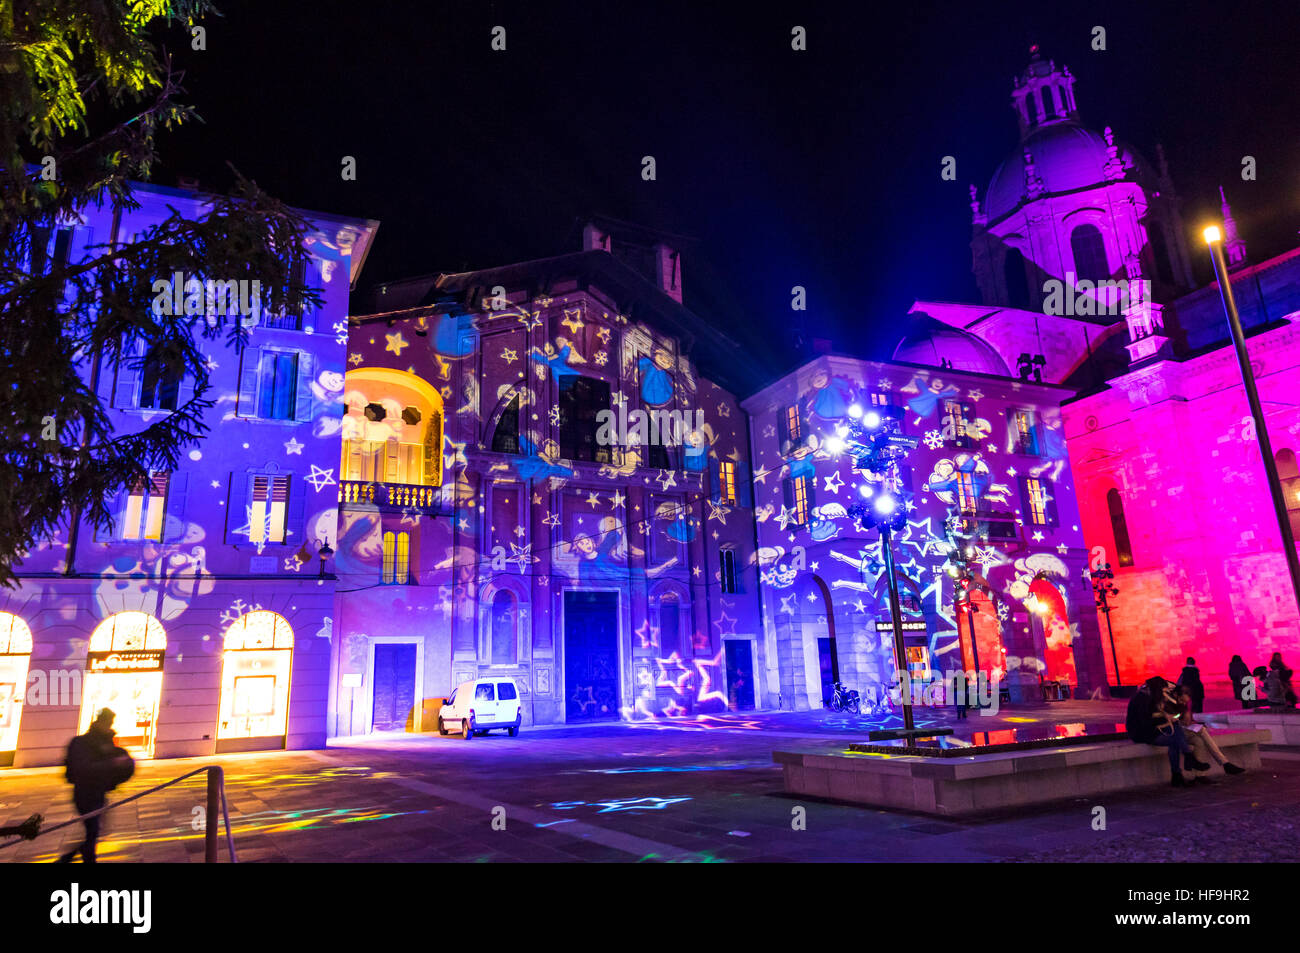 COMO, Italia - 2 dicembre 2016: Festa di Natale decorazioni luci su facciate di edifici su Piazza Duomo nel centro di Como vecchio Foto Stock